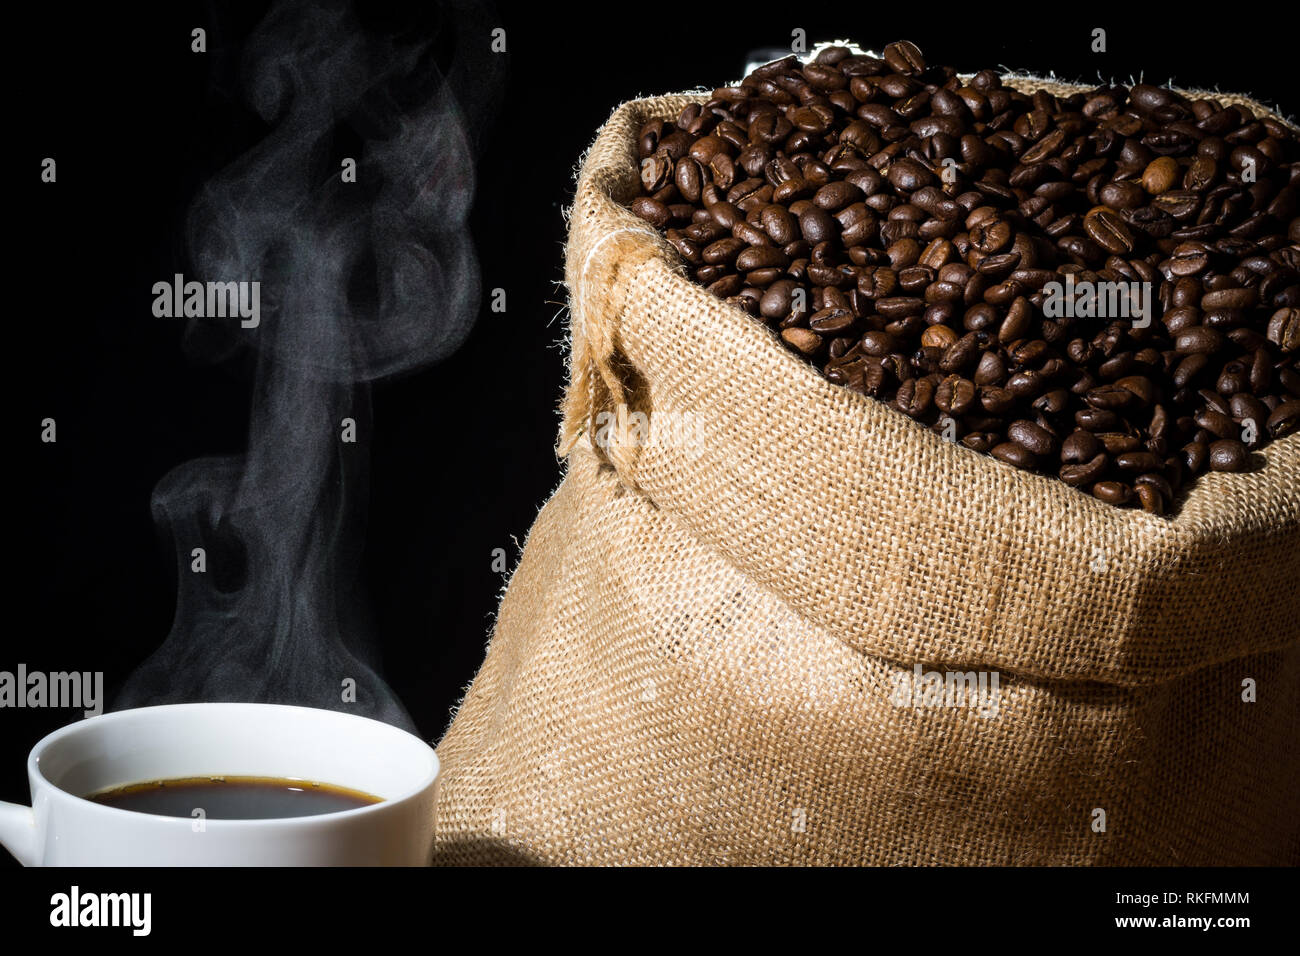 Café infusé dans une tasse blanche avec de la vapeur ou de la vapeur et les grains de café dans un sac en toile de jute jute dans l'arrière-plan. Banque D'Images